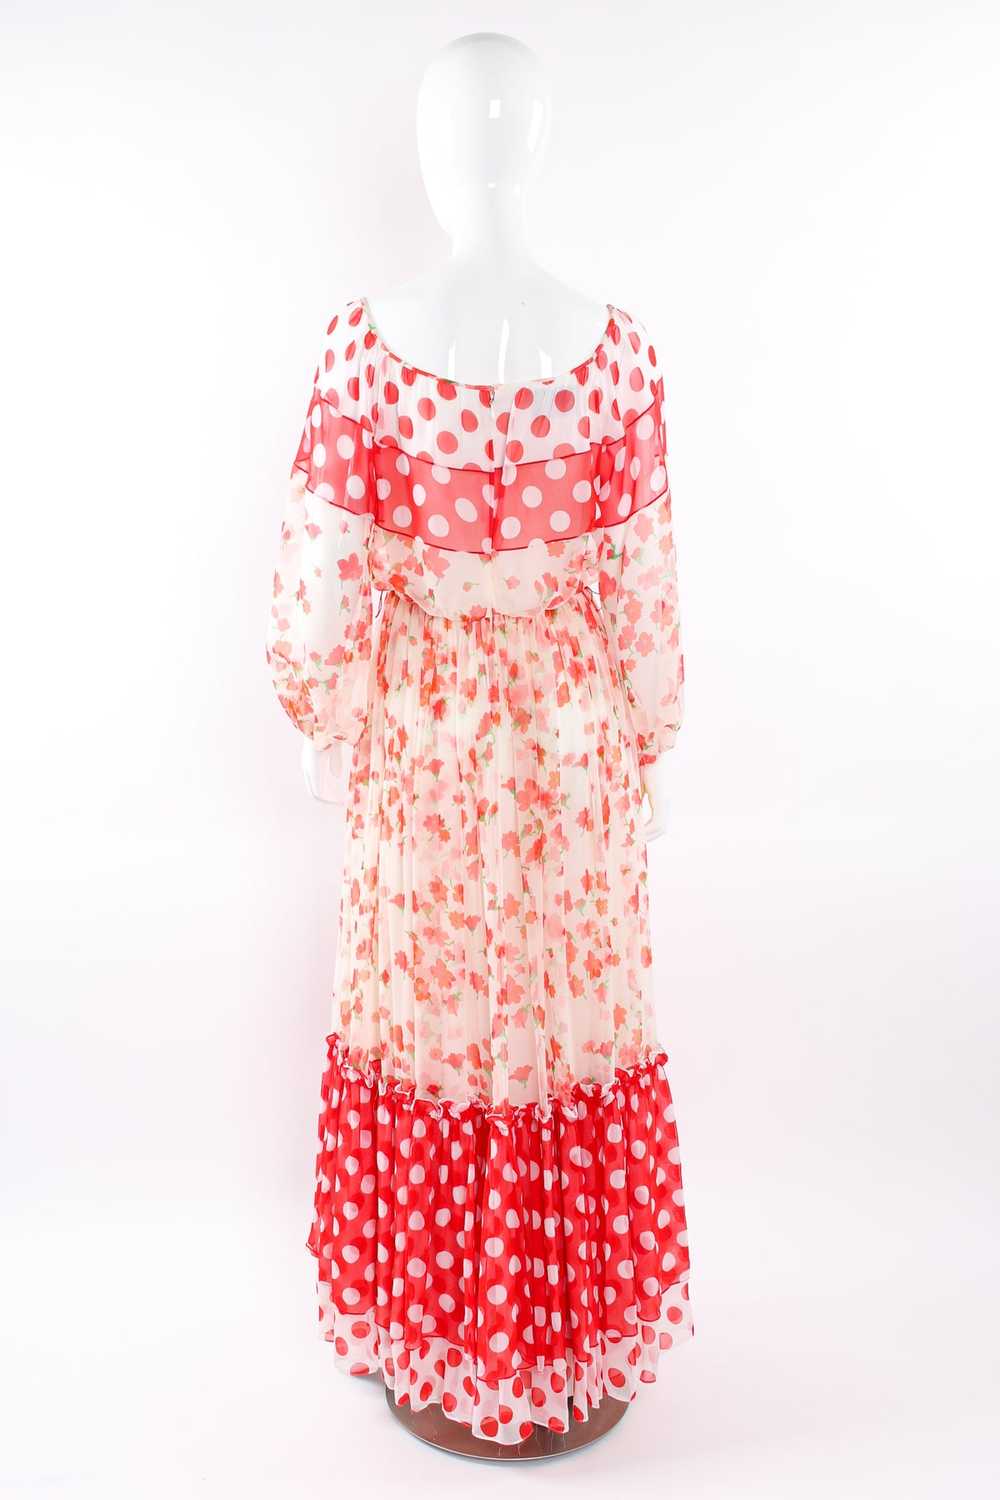 MIGNON Blooming Polka Dot Dress - image 2